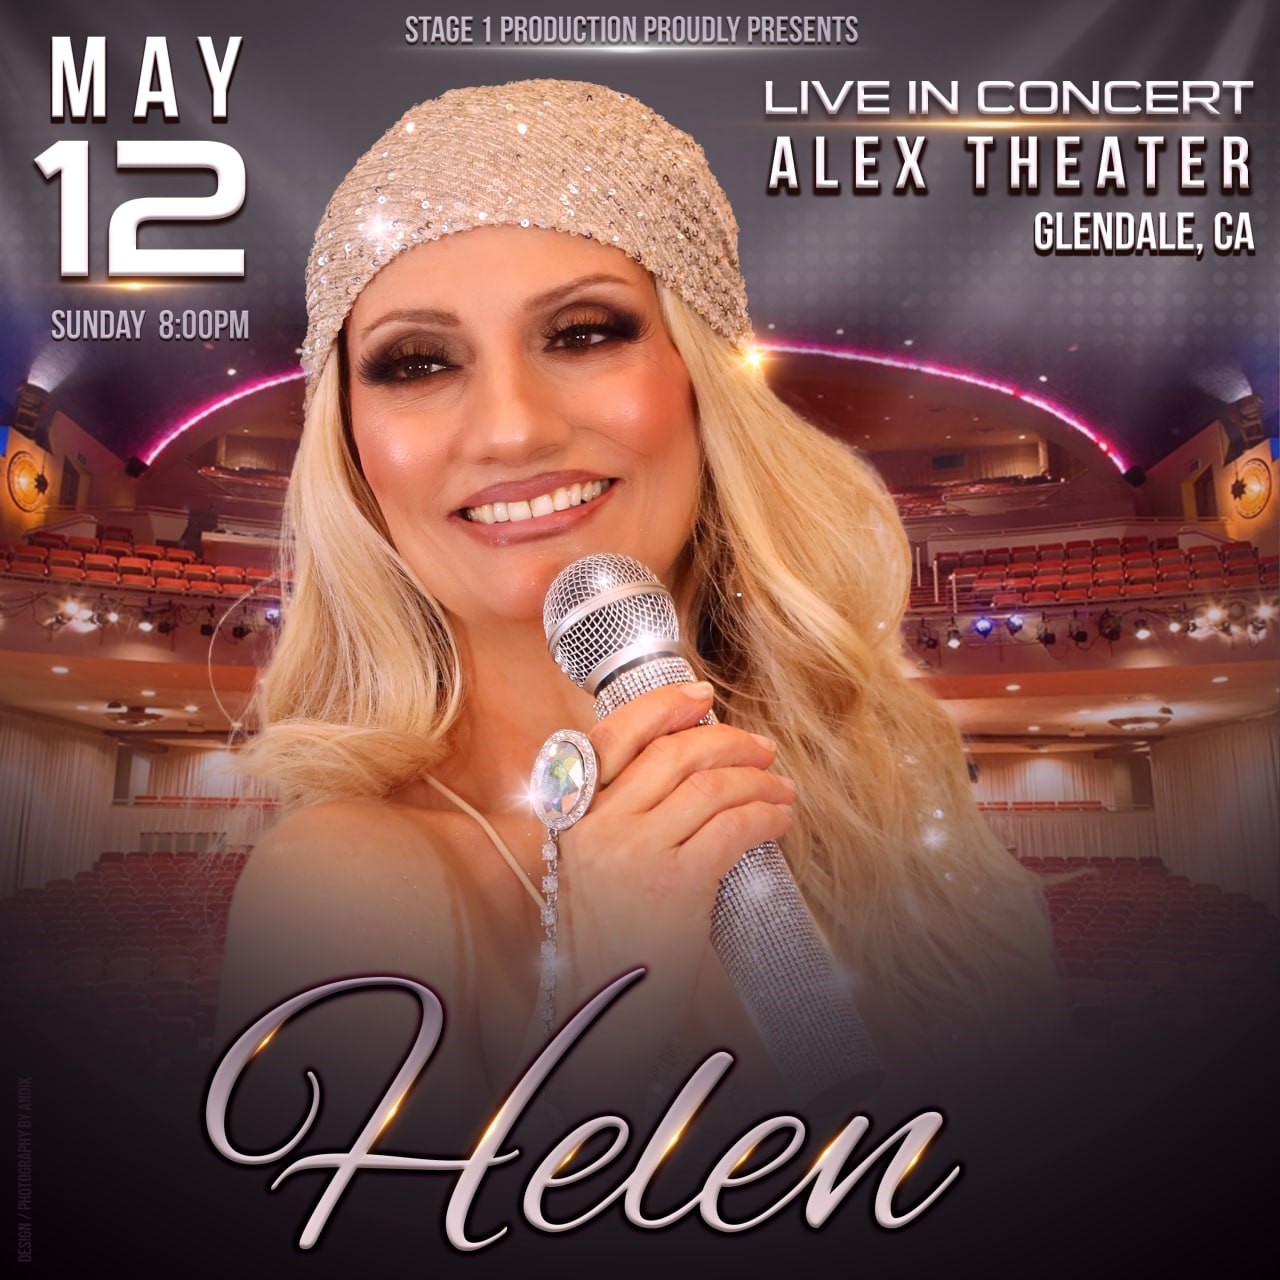 Stage1 Production Proudly Presents Helen Live in Concert, Glendale/Alex Theatre on may. 12, 20:00@Copy:ALEX THEATER * - Elegir asientoCompra entradas y obtén información enstage1production 